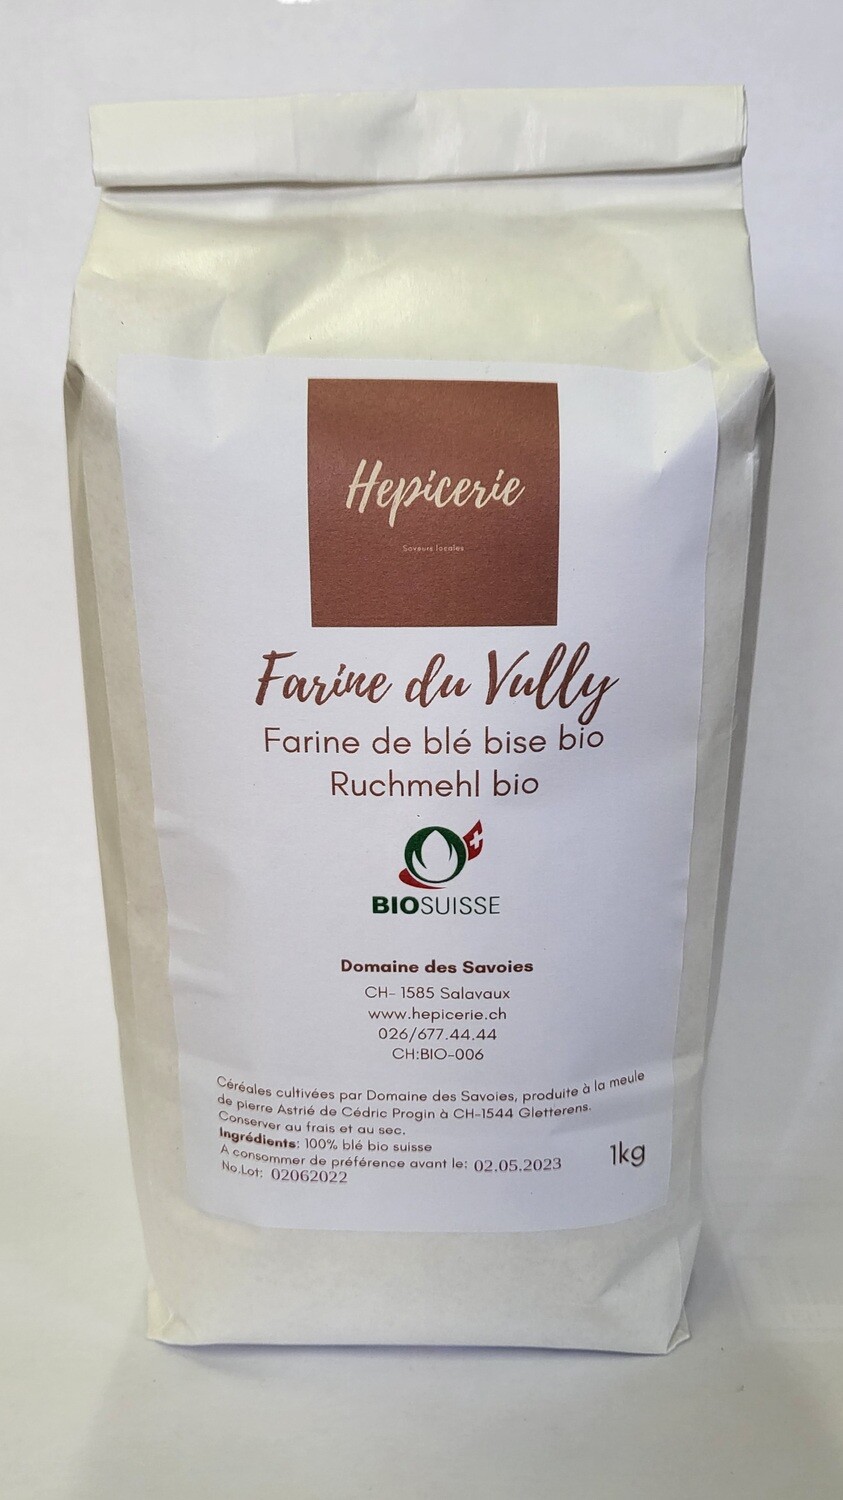 Farine de blé tendre BISE
Bio Suisse